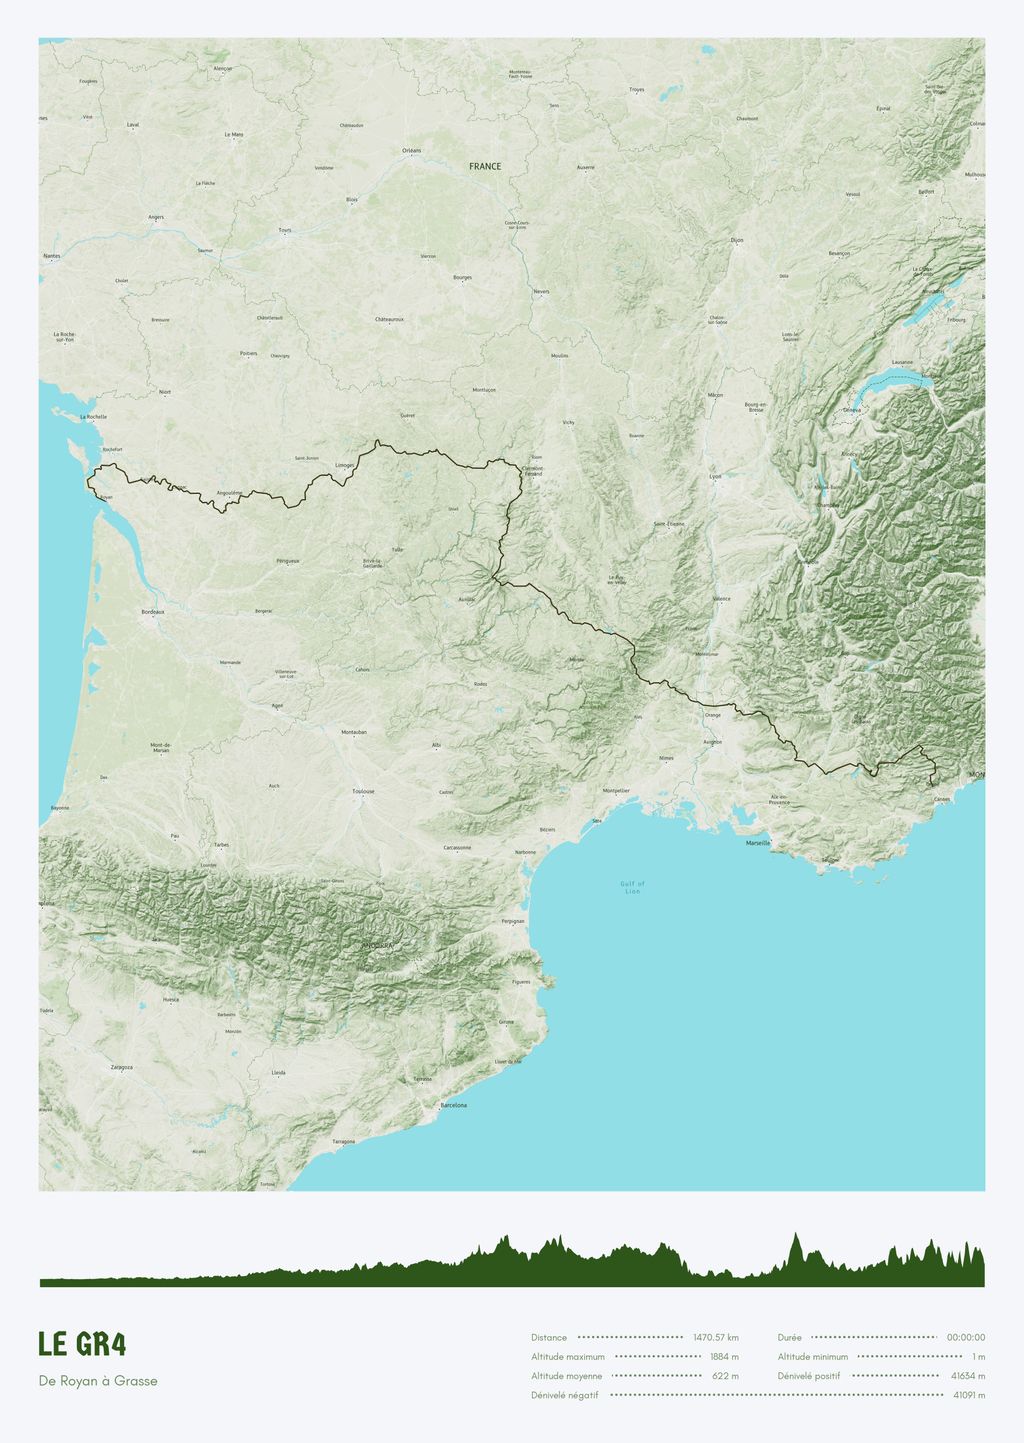 Póster con un mapa de Le GR4